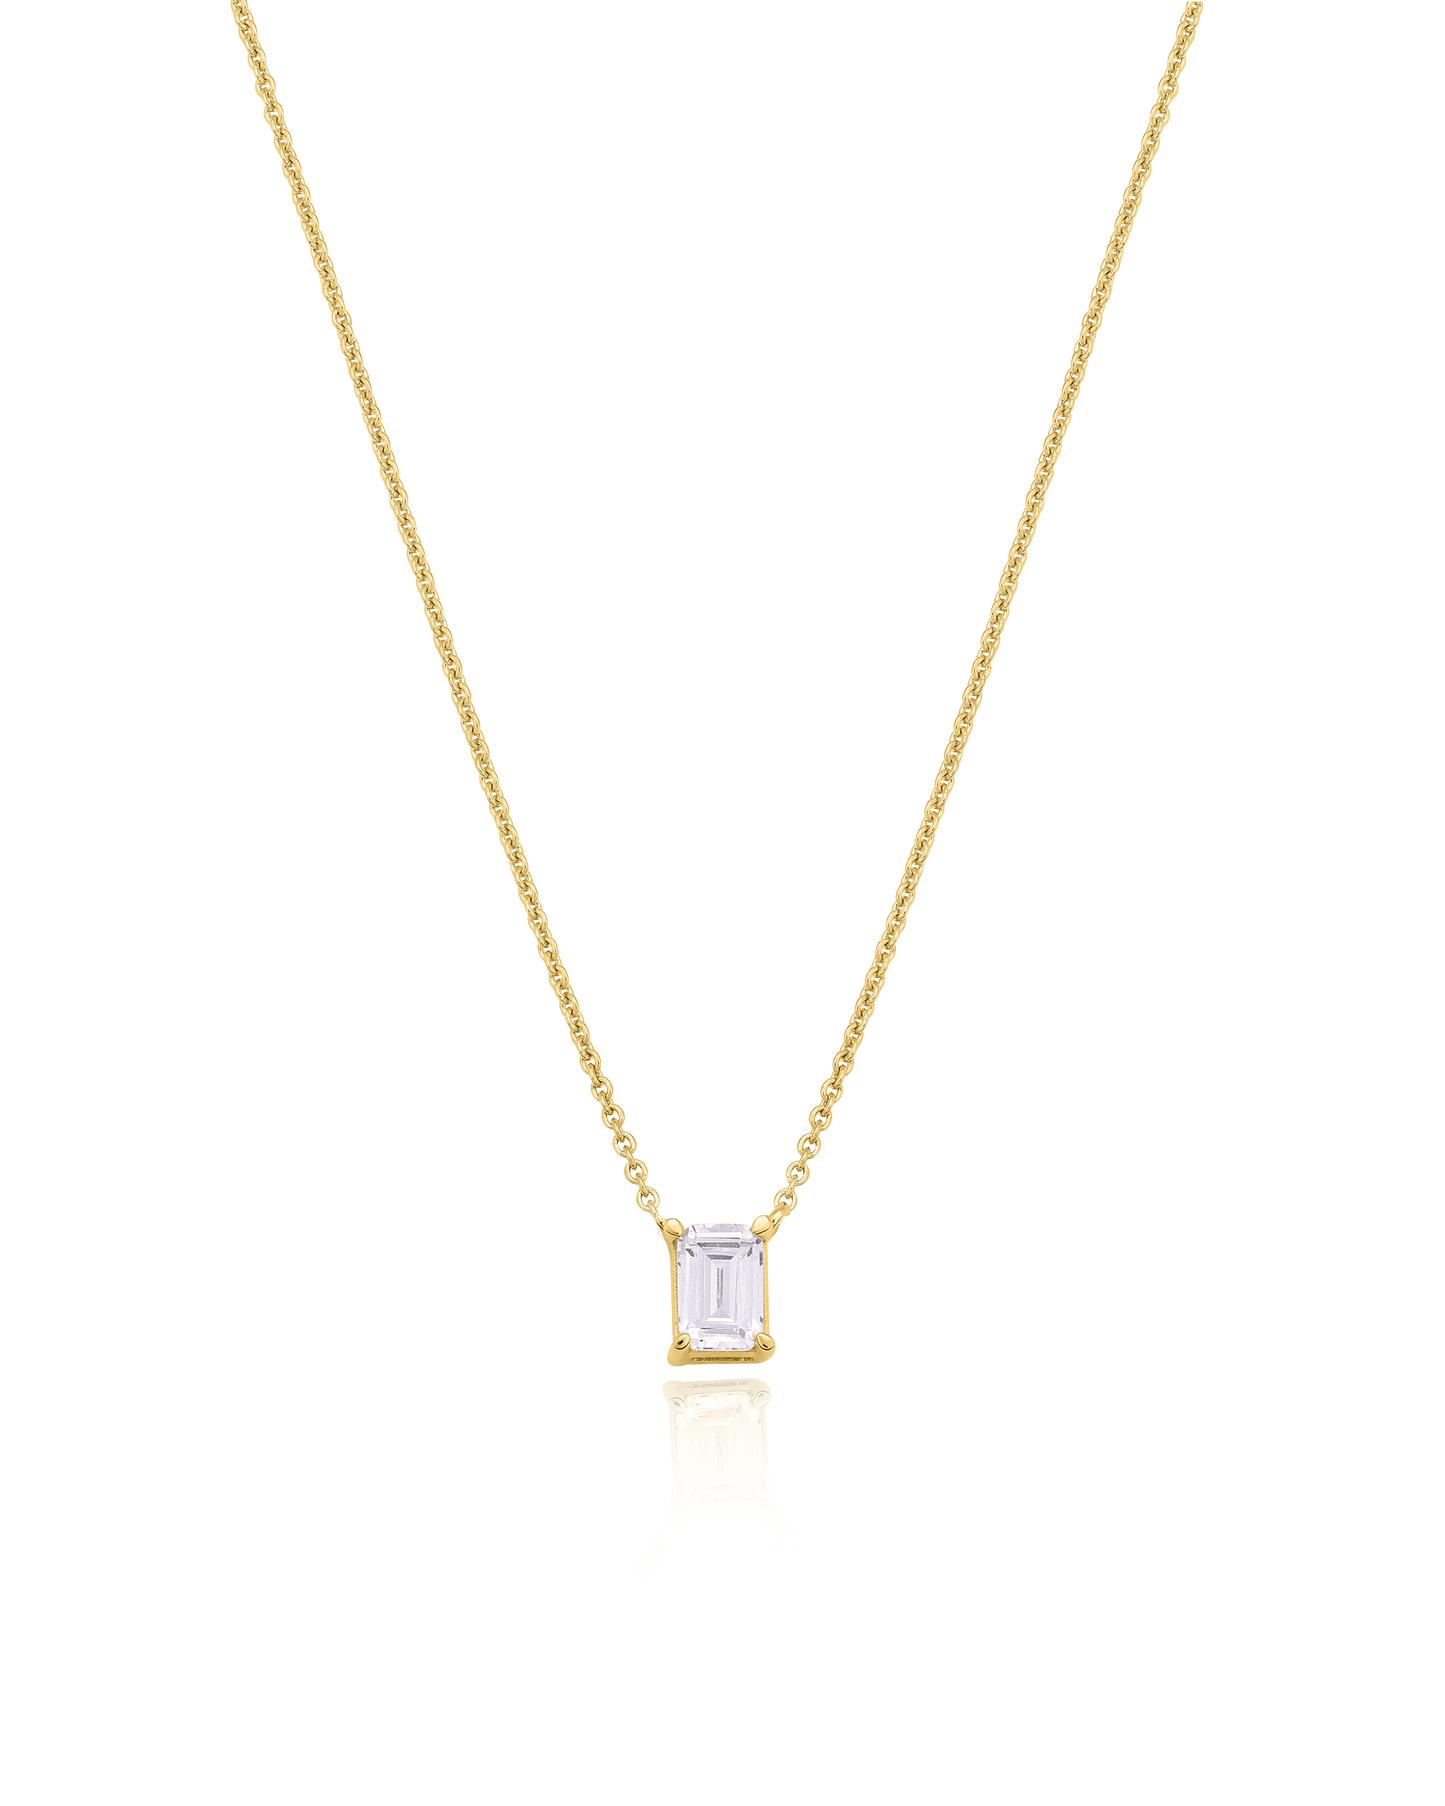 Emerald Solitaire Diamond Necklace - 18K Rose Vermeil Necklaces magal-dev 